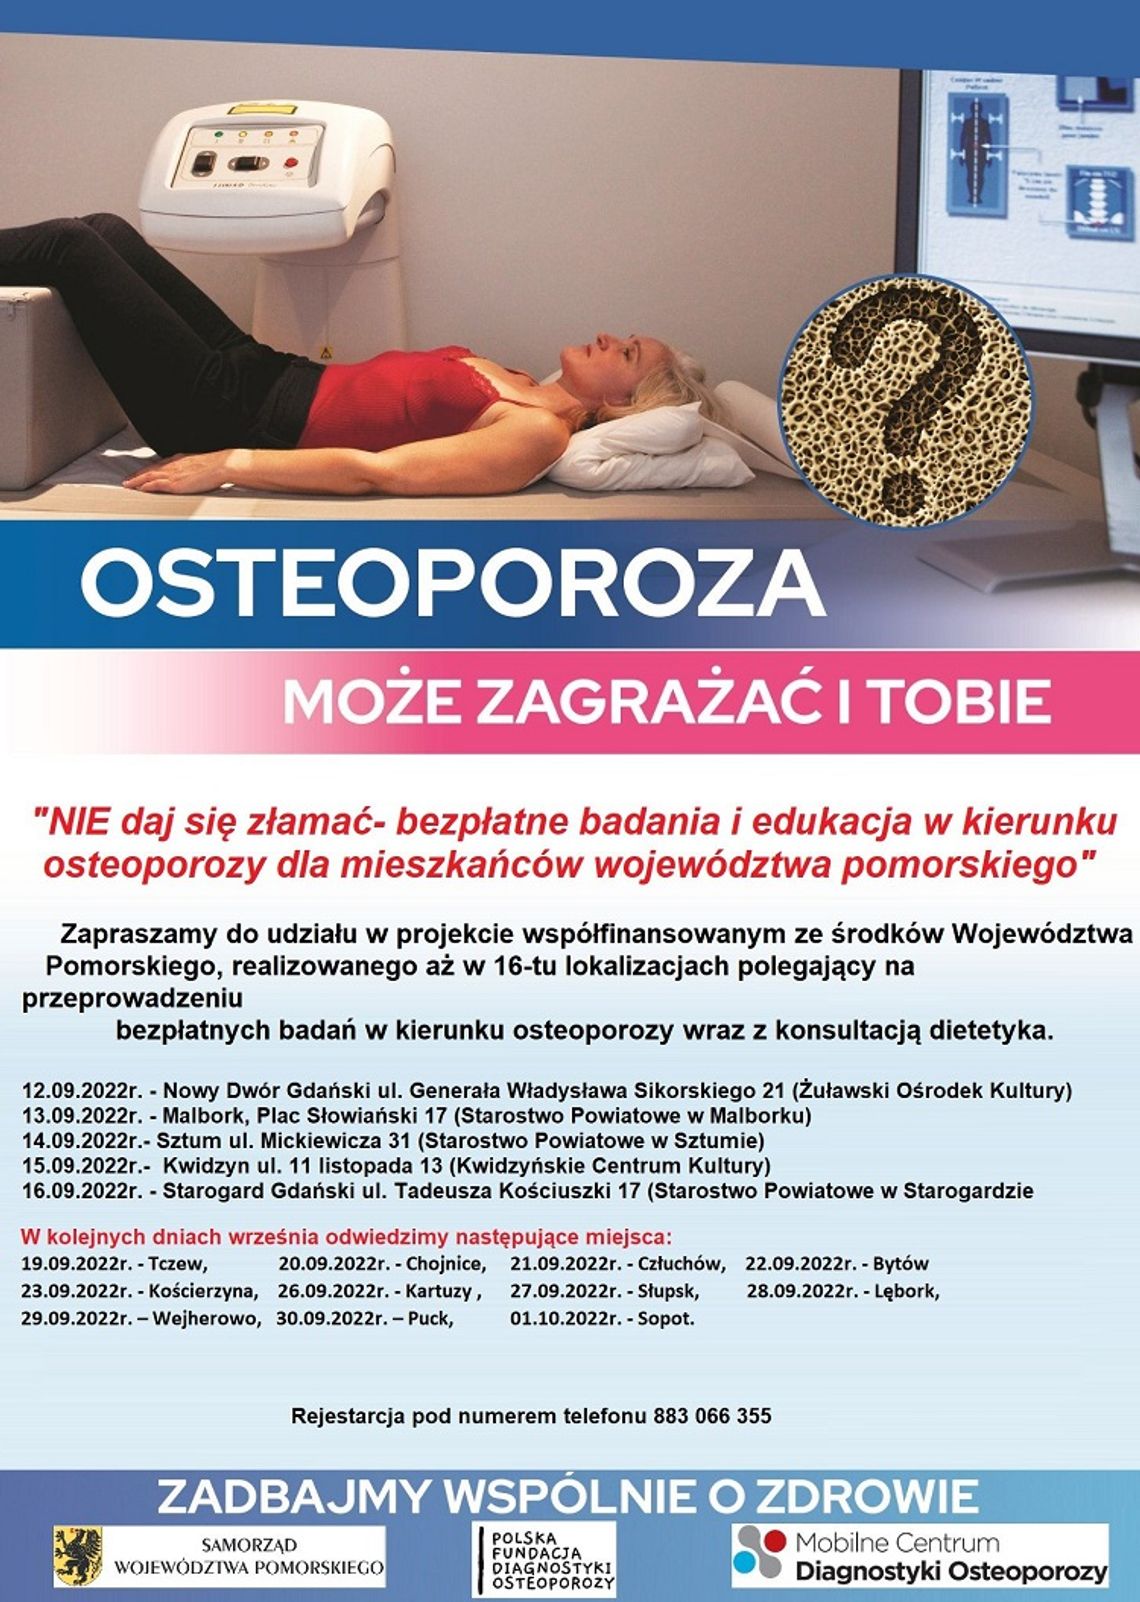 Bezpłatne badania w kierunku osteoporozy w Malborku